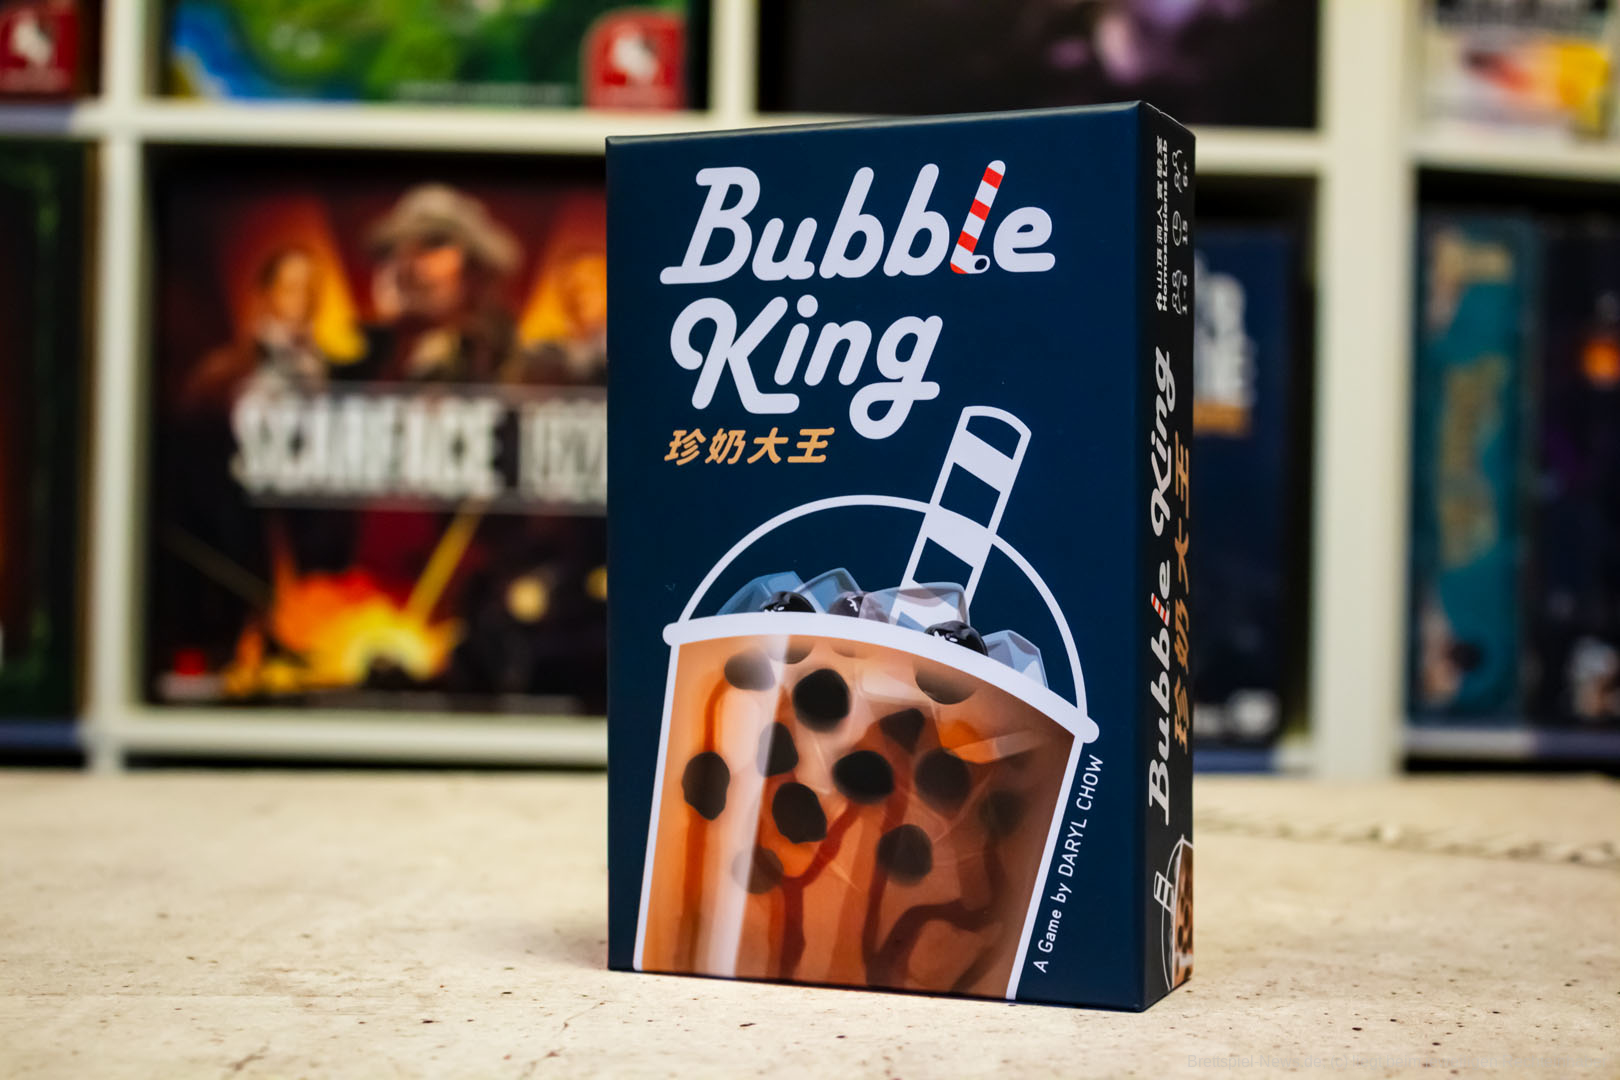 Ein Kartenspiel über Bubble Tea - Wie funktioniert das?